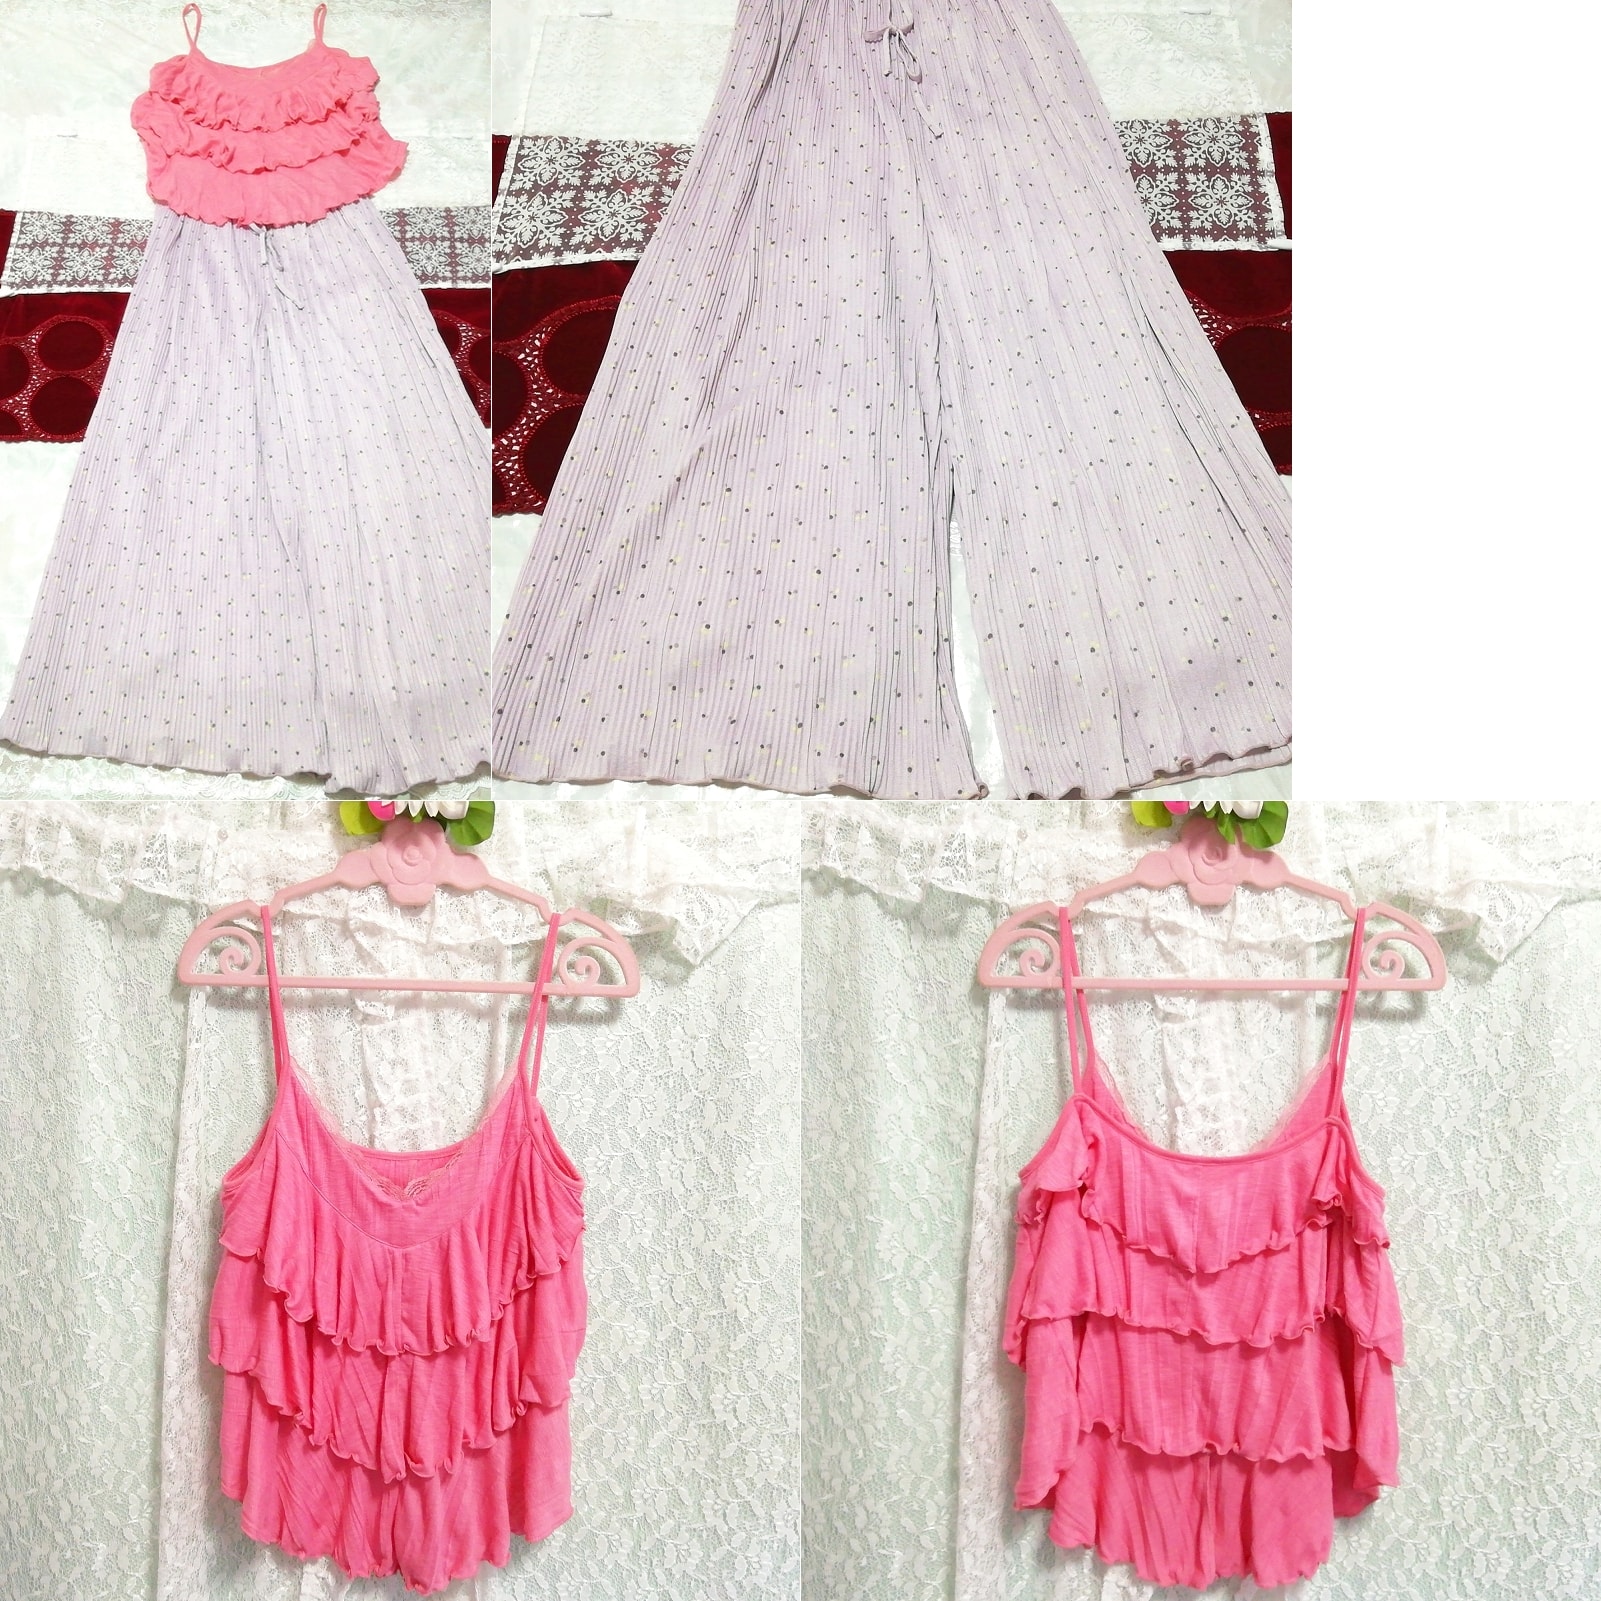 粉色褶边吊带背心睡衣紫色花卉图案长裙 2 件, 时尚, 女士时装, 睡衣